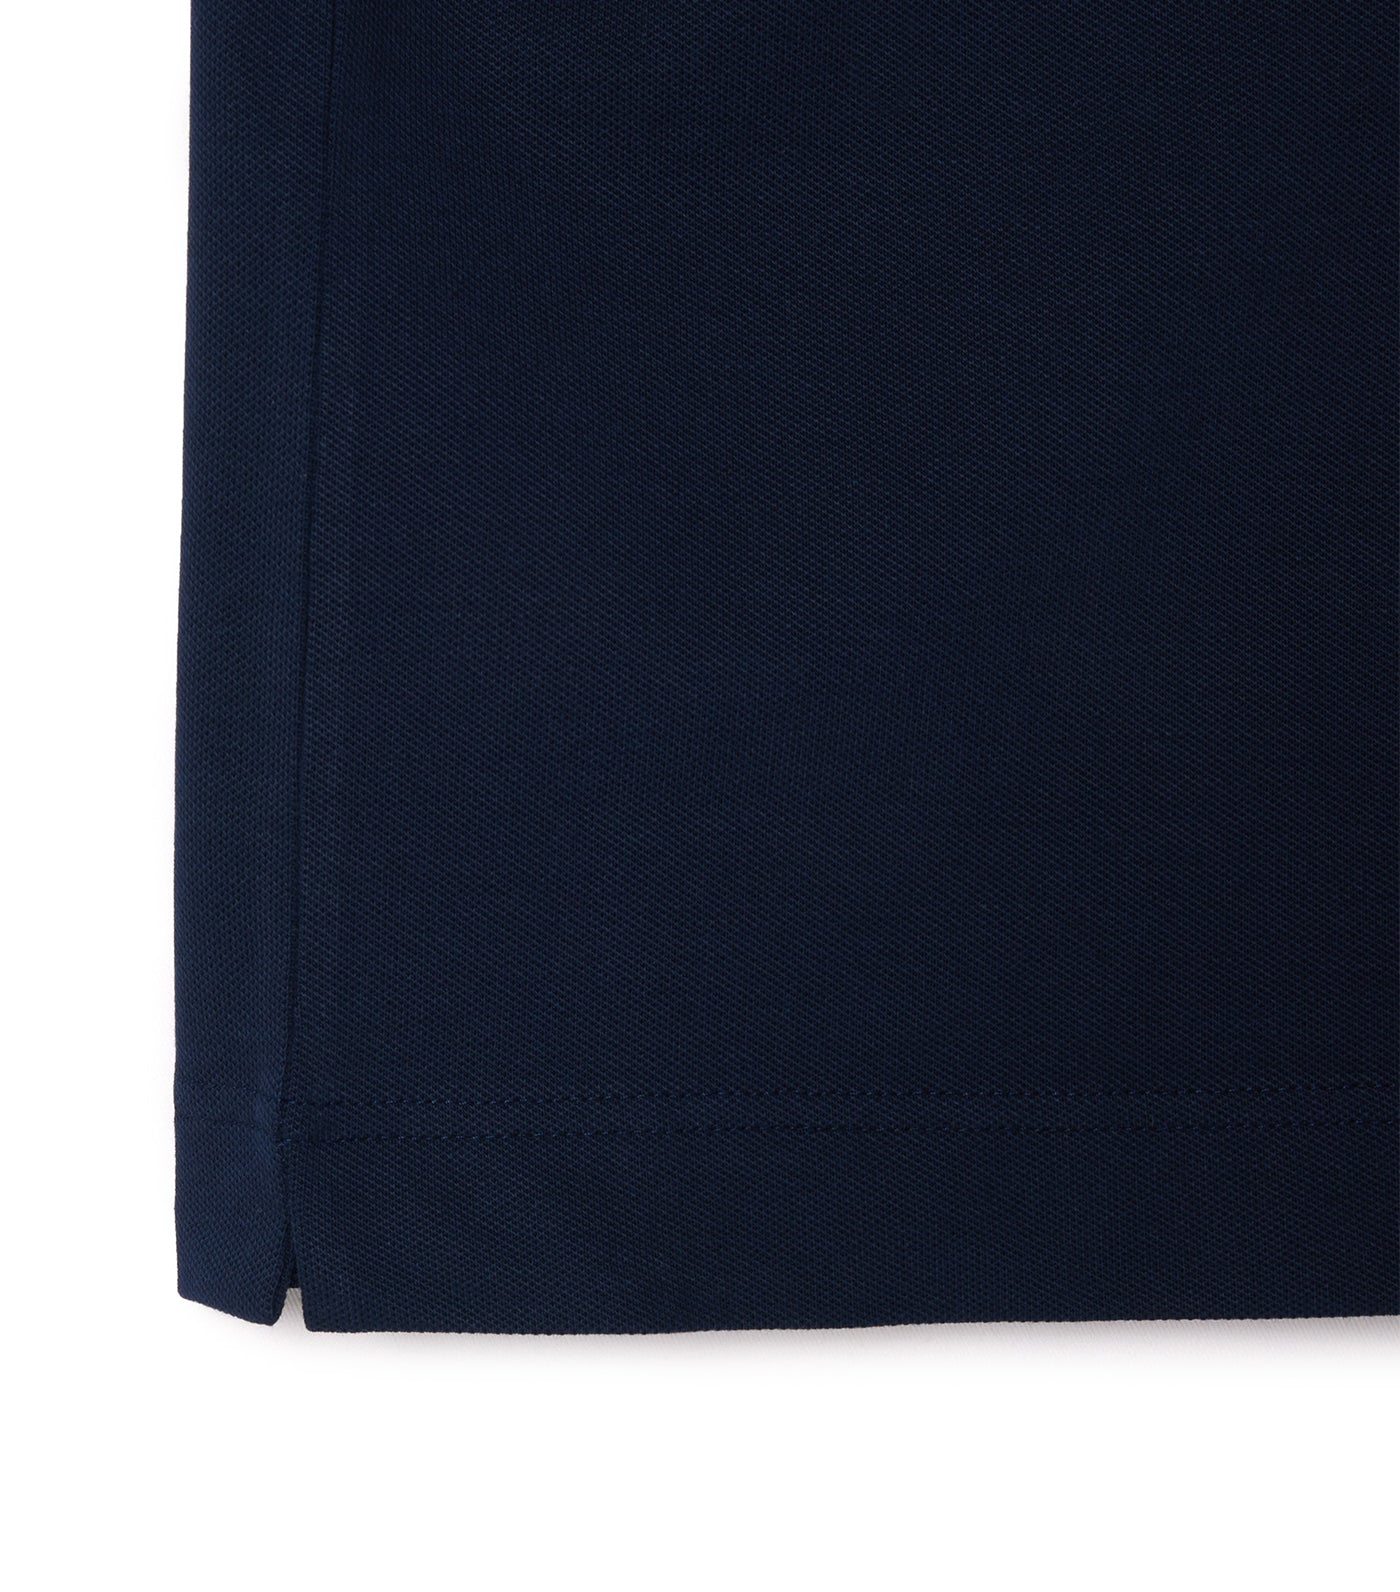 Lacoste Smart Paris Stretch Cotton Contrast Trim Polo Shirt Navy Blue